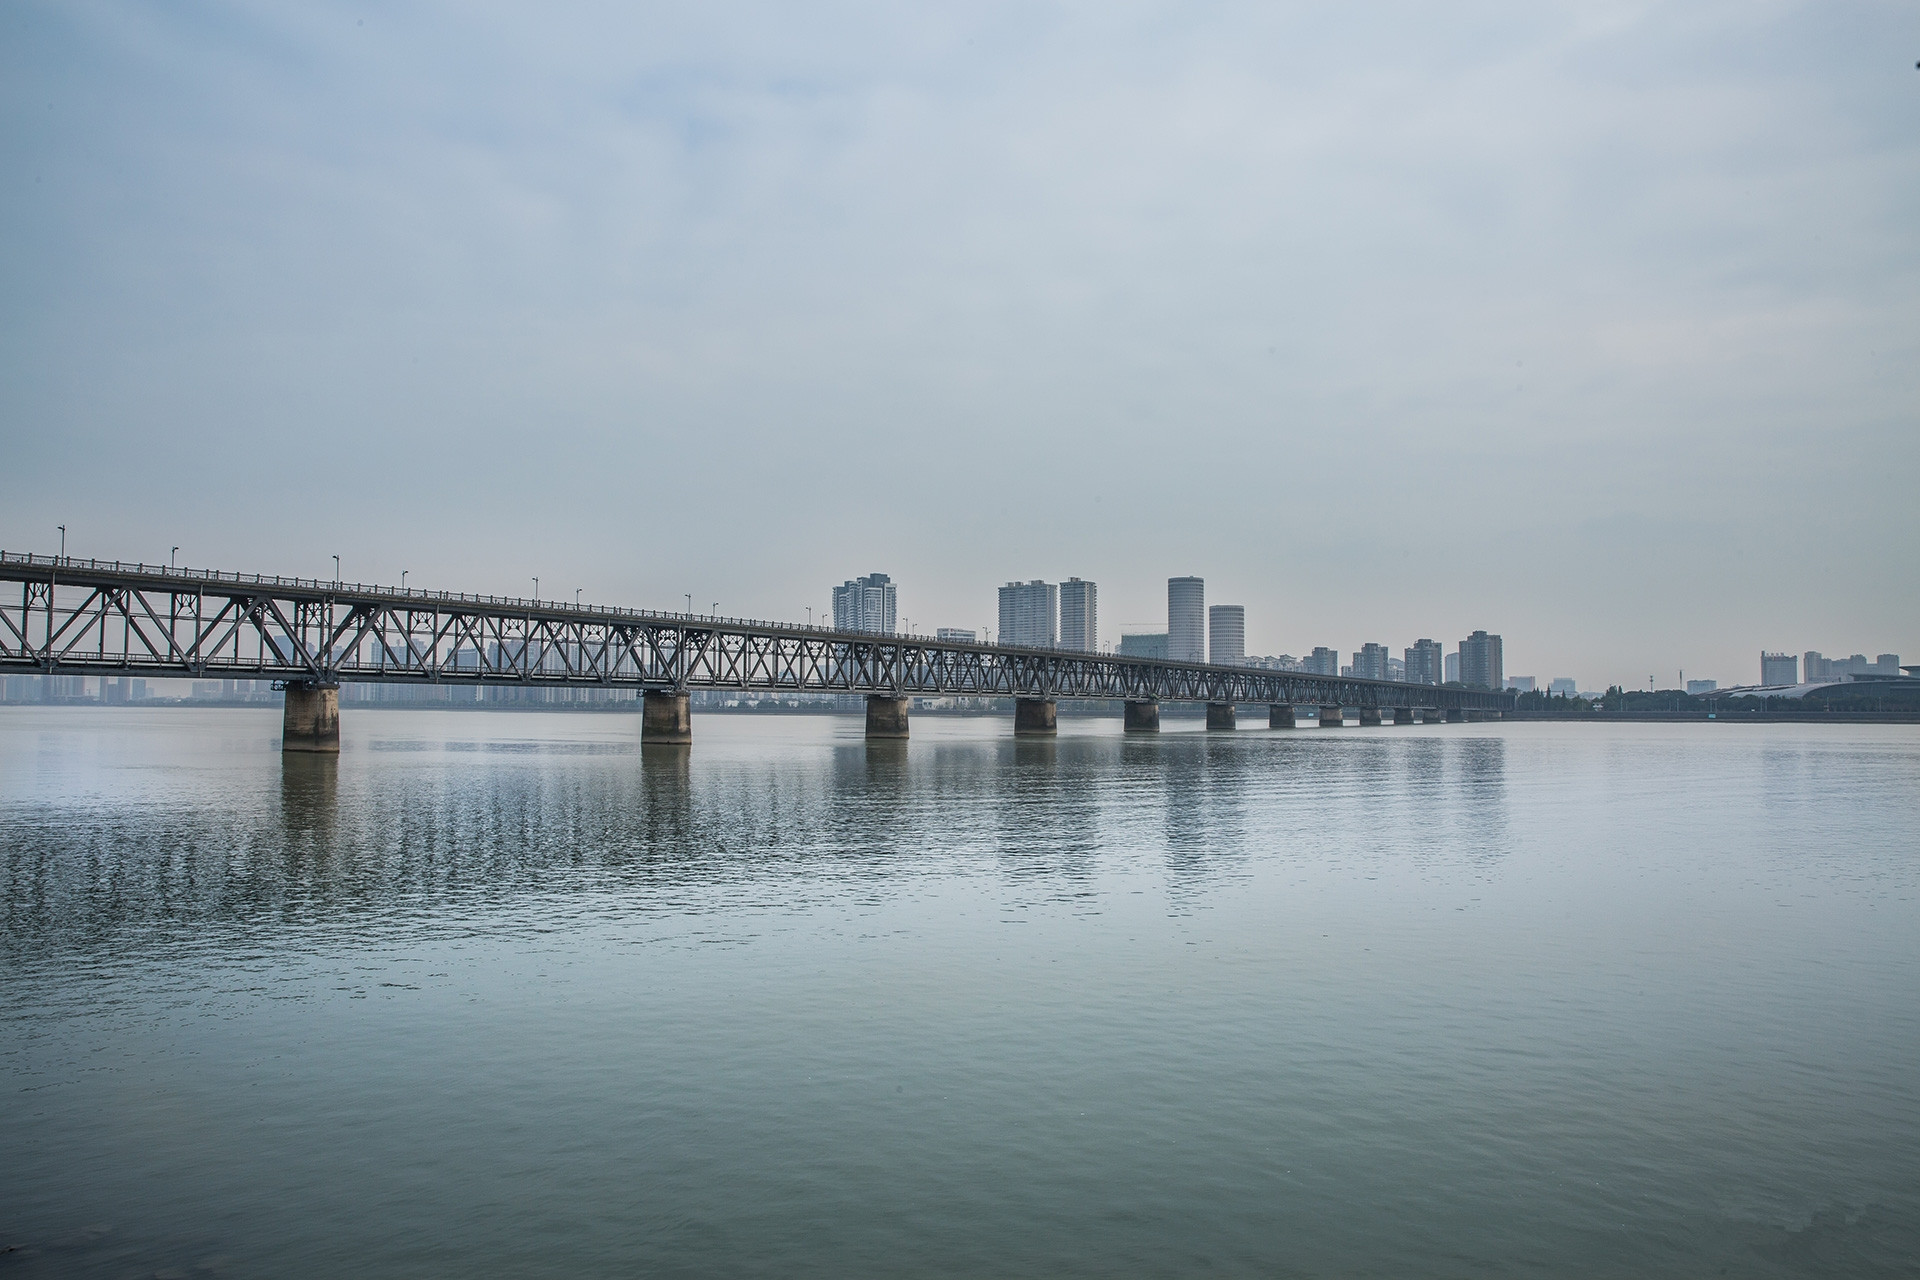 钱塘江大桥是中国自行设计,建造的第一座双层铁路,公路两用桥,是我国